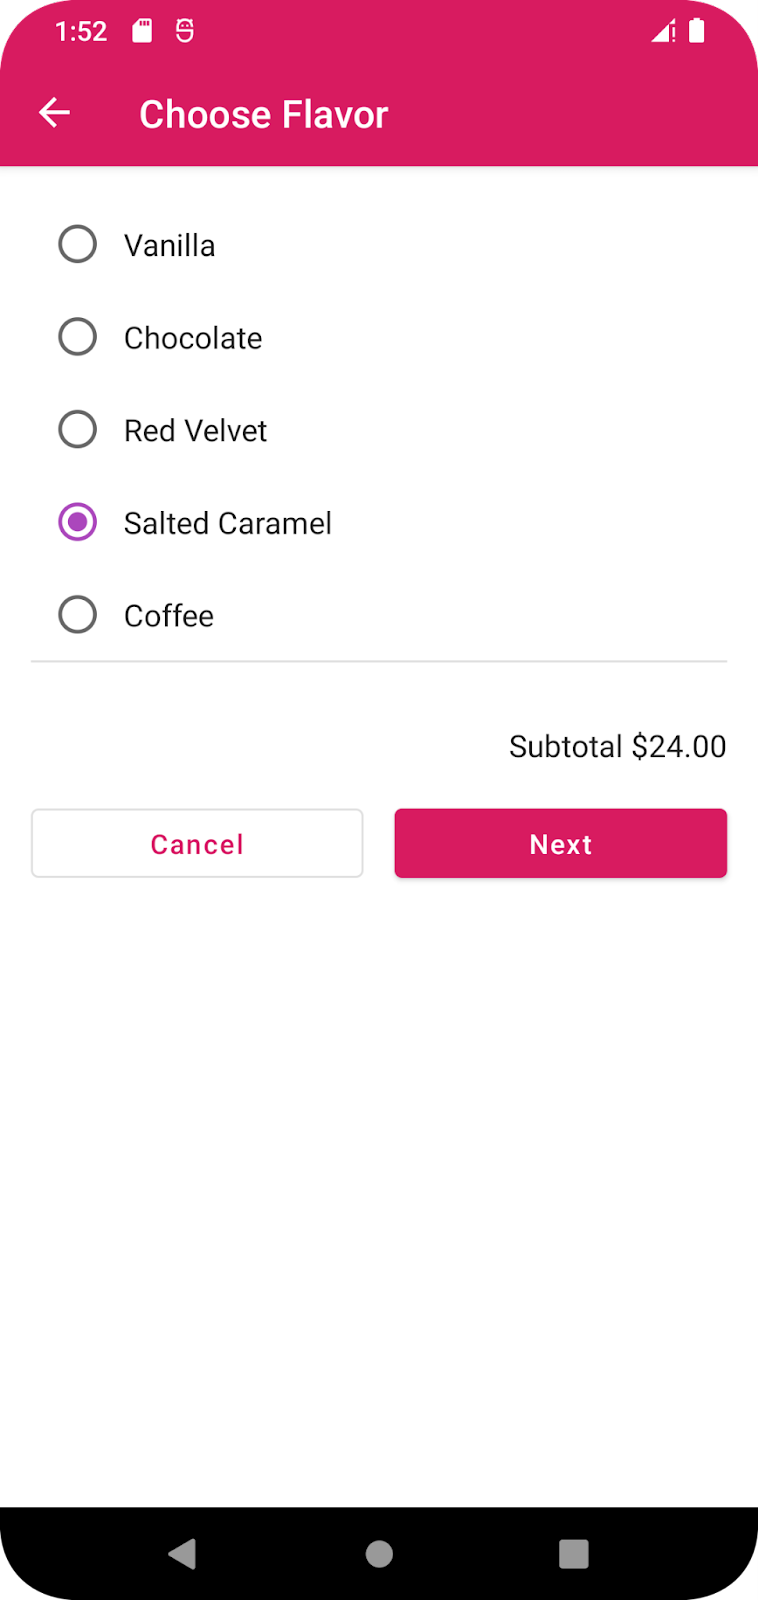 La app de Cupcake presenta al usuario opciones de diferentes sabores.